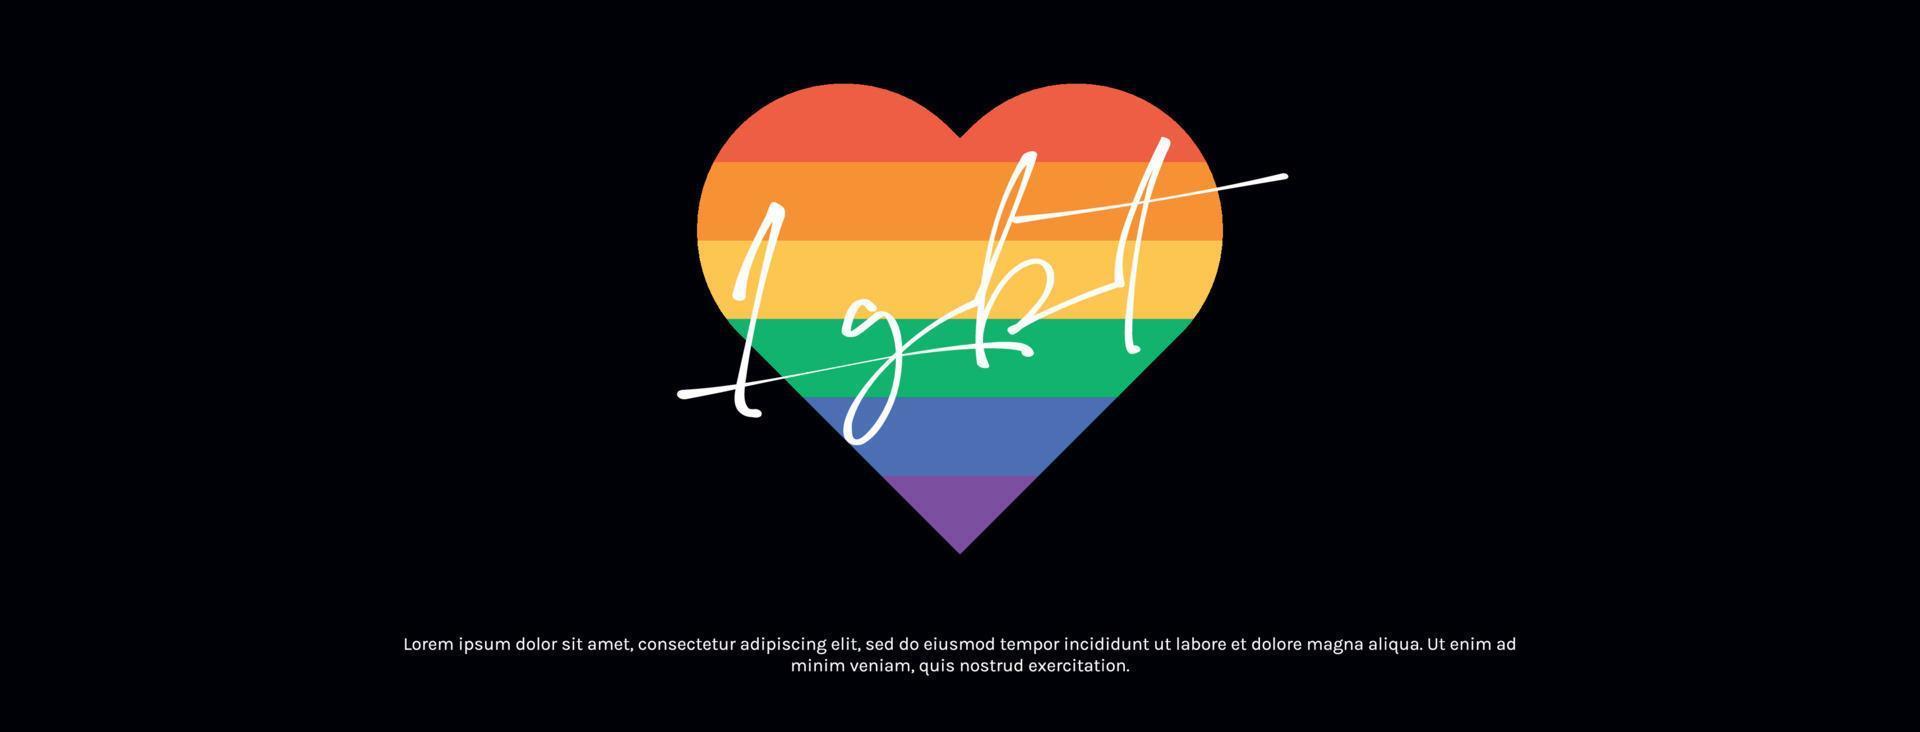 lgbt gemeenschap vlag kleuren en transgender liefde vlak vector illustratie.